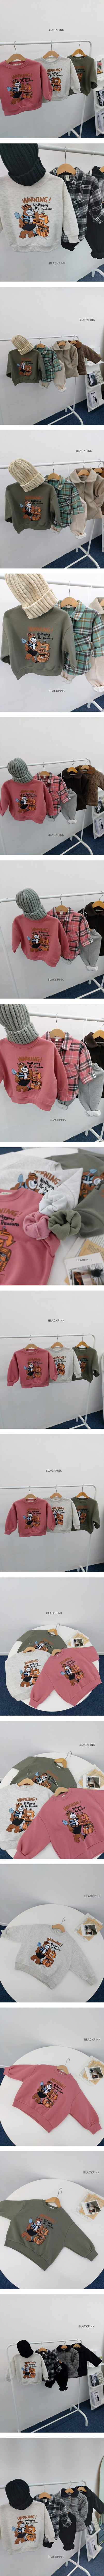 Black Pink - Korean Children Fashion - #todddlerfashion - Honey Fleece Sweatshirt